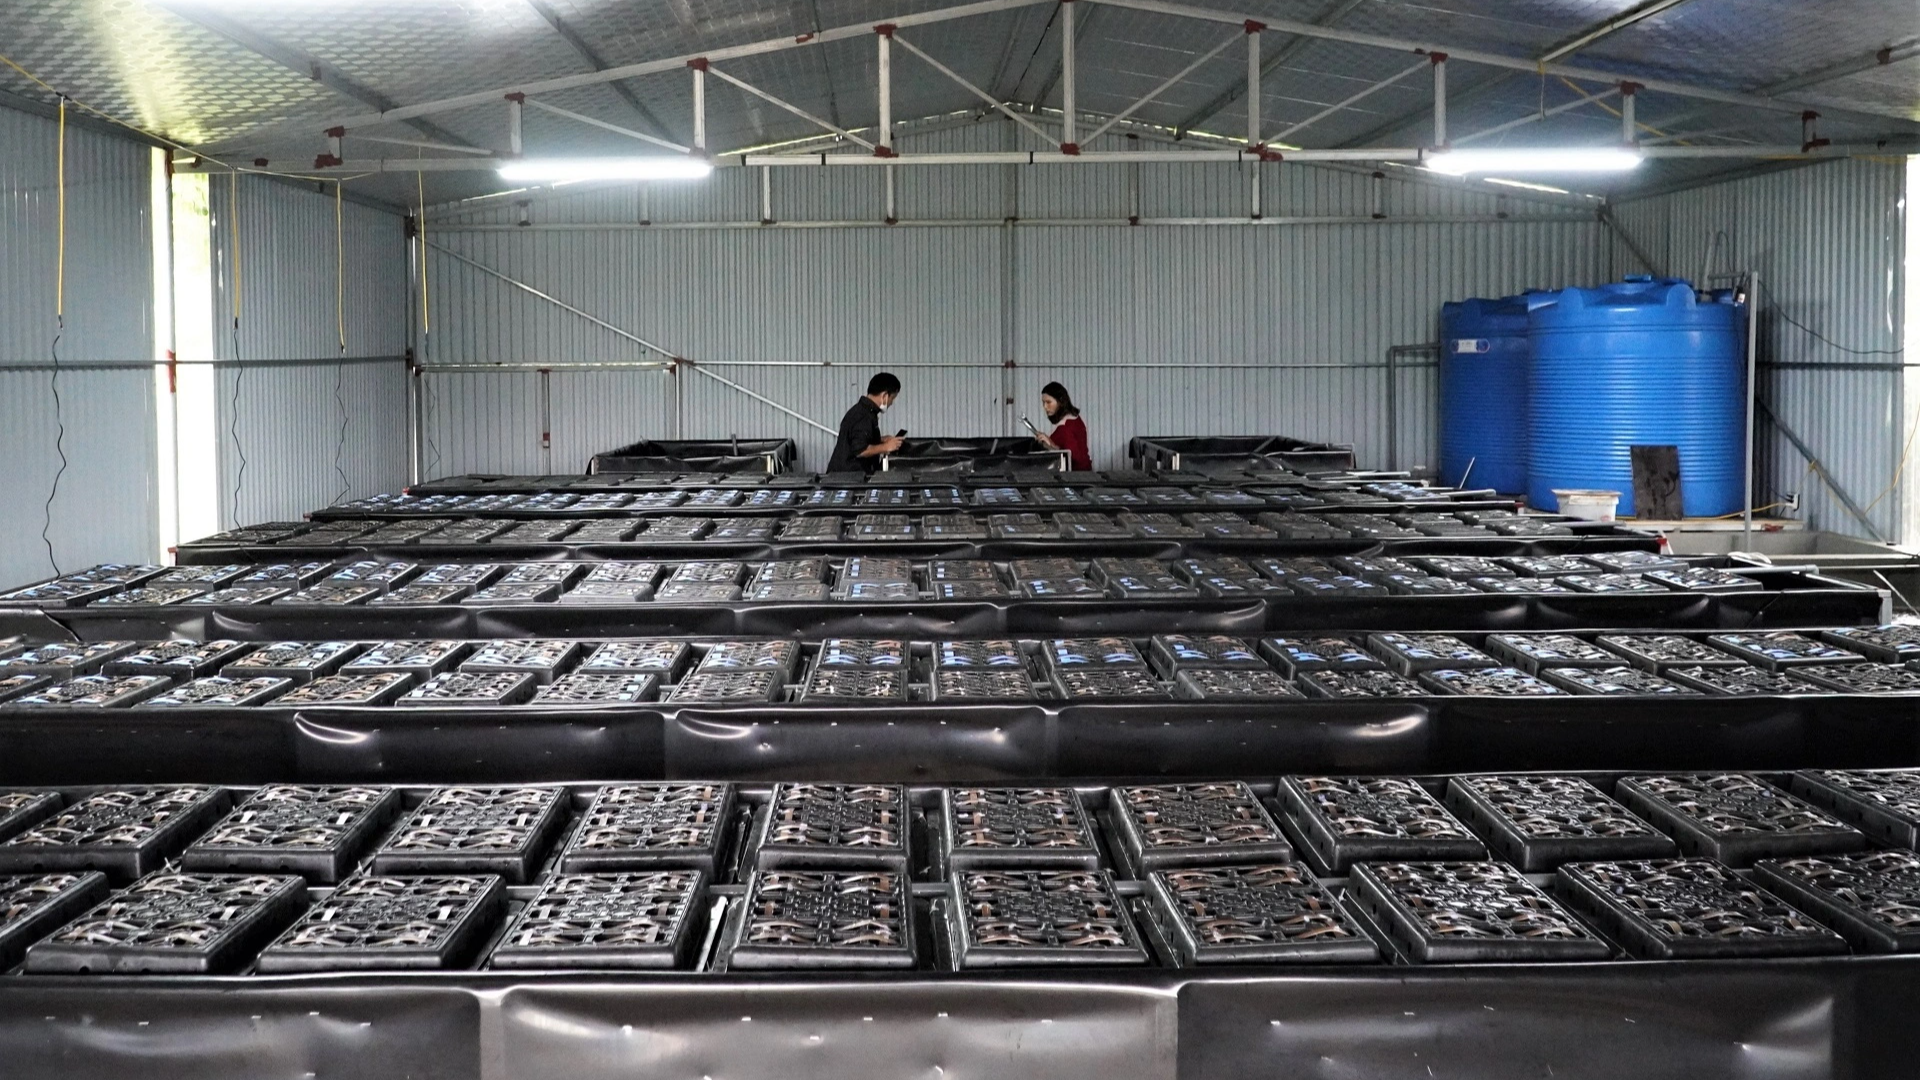 Chi tiết kinh nghiệm mô hình nuôi cua đồng trong thùng nhựa chất lượng   Thủy Hải Sản Việt Nam